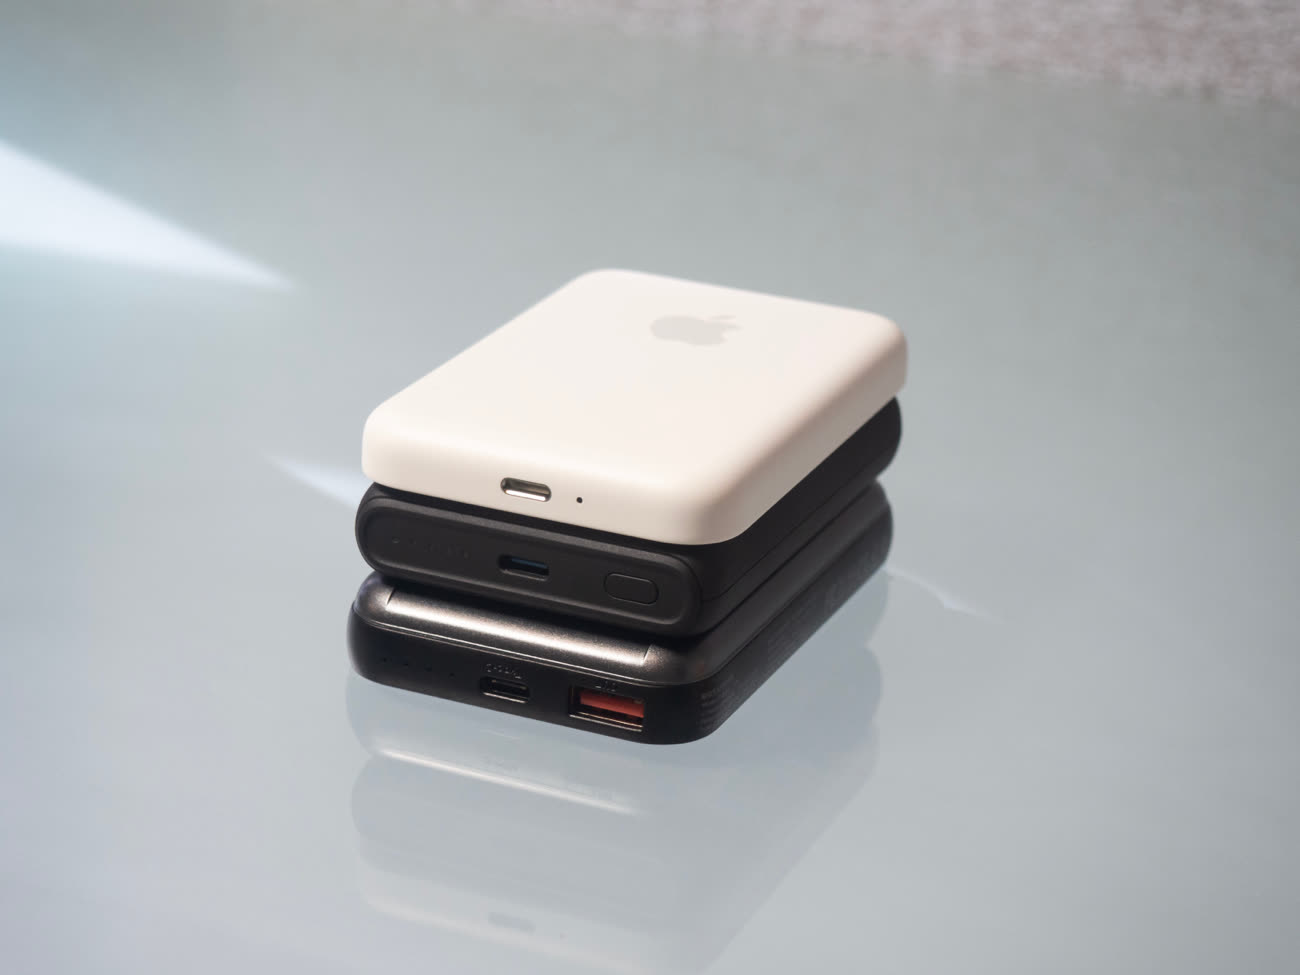 Batterie externe Apple MagSafe : prise en main du nouvel accessoire pour l' iPhone 12 - CNET France